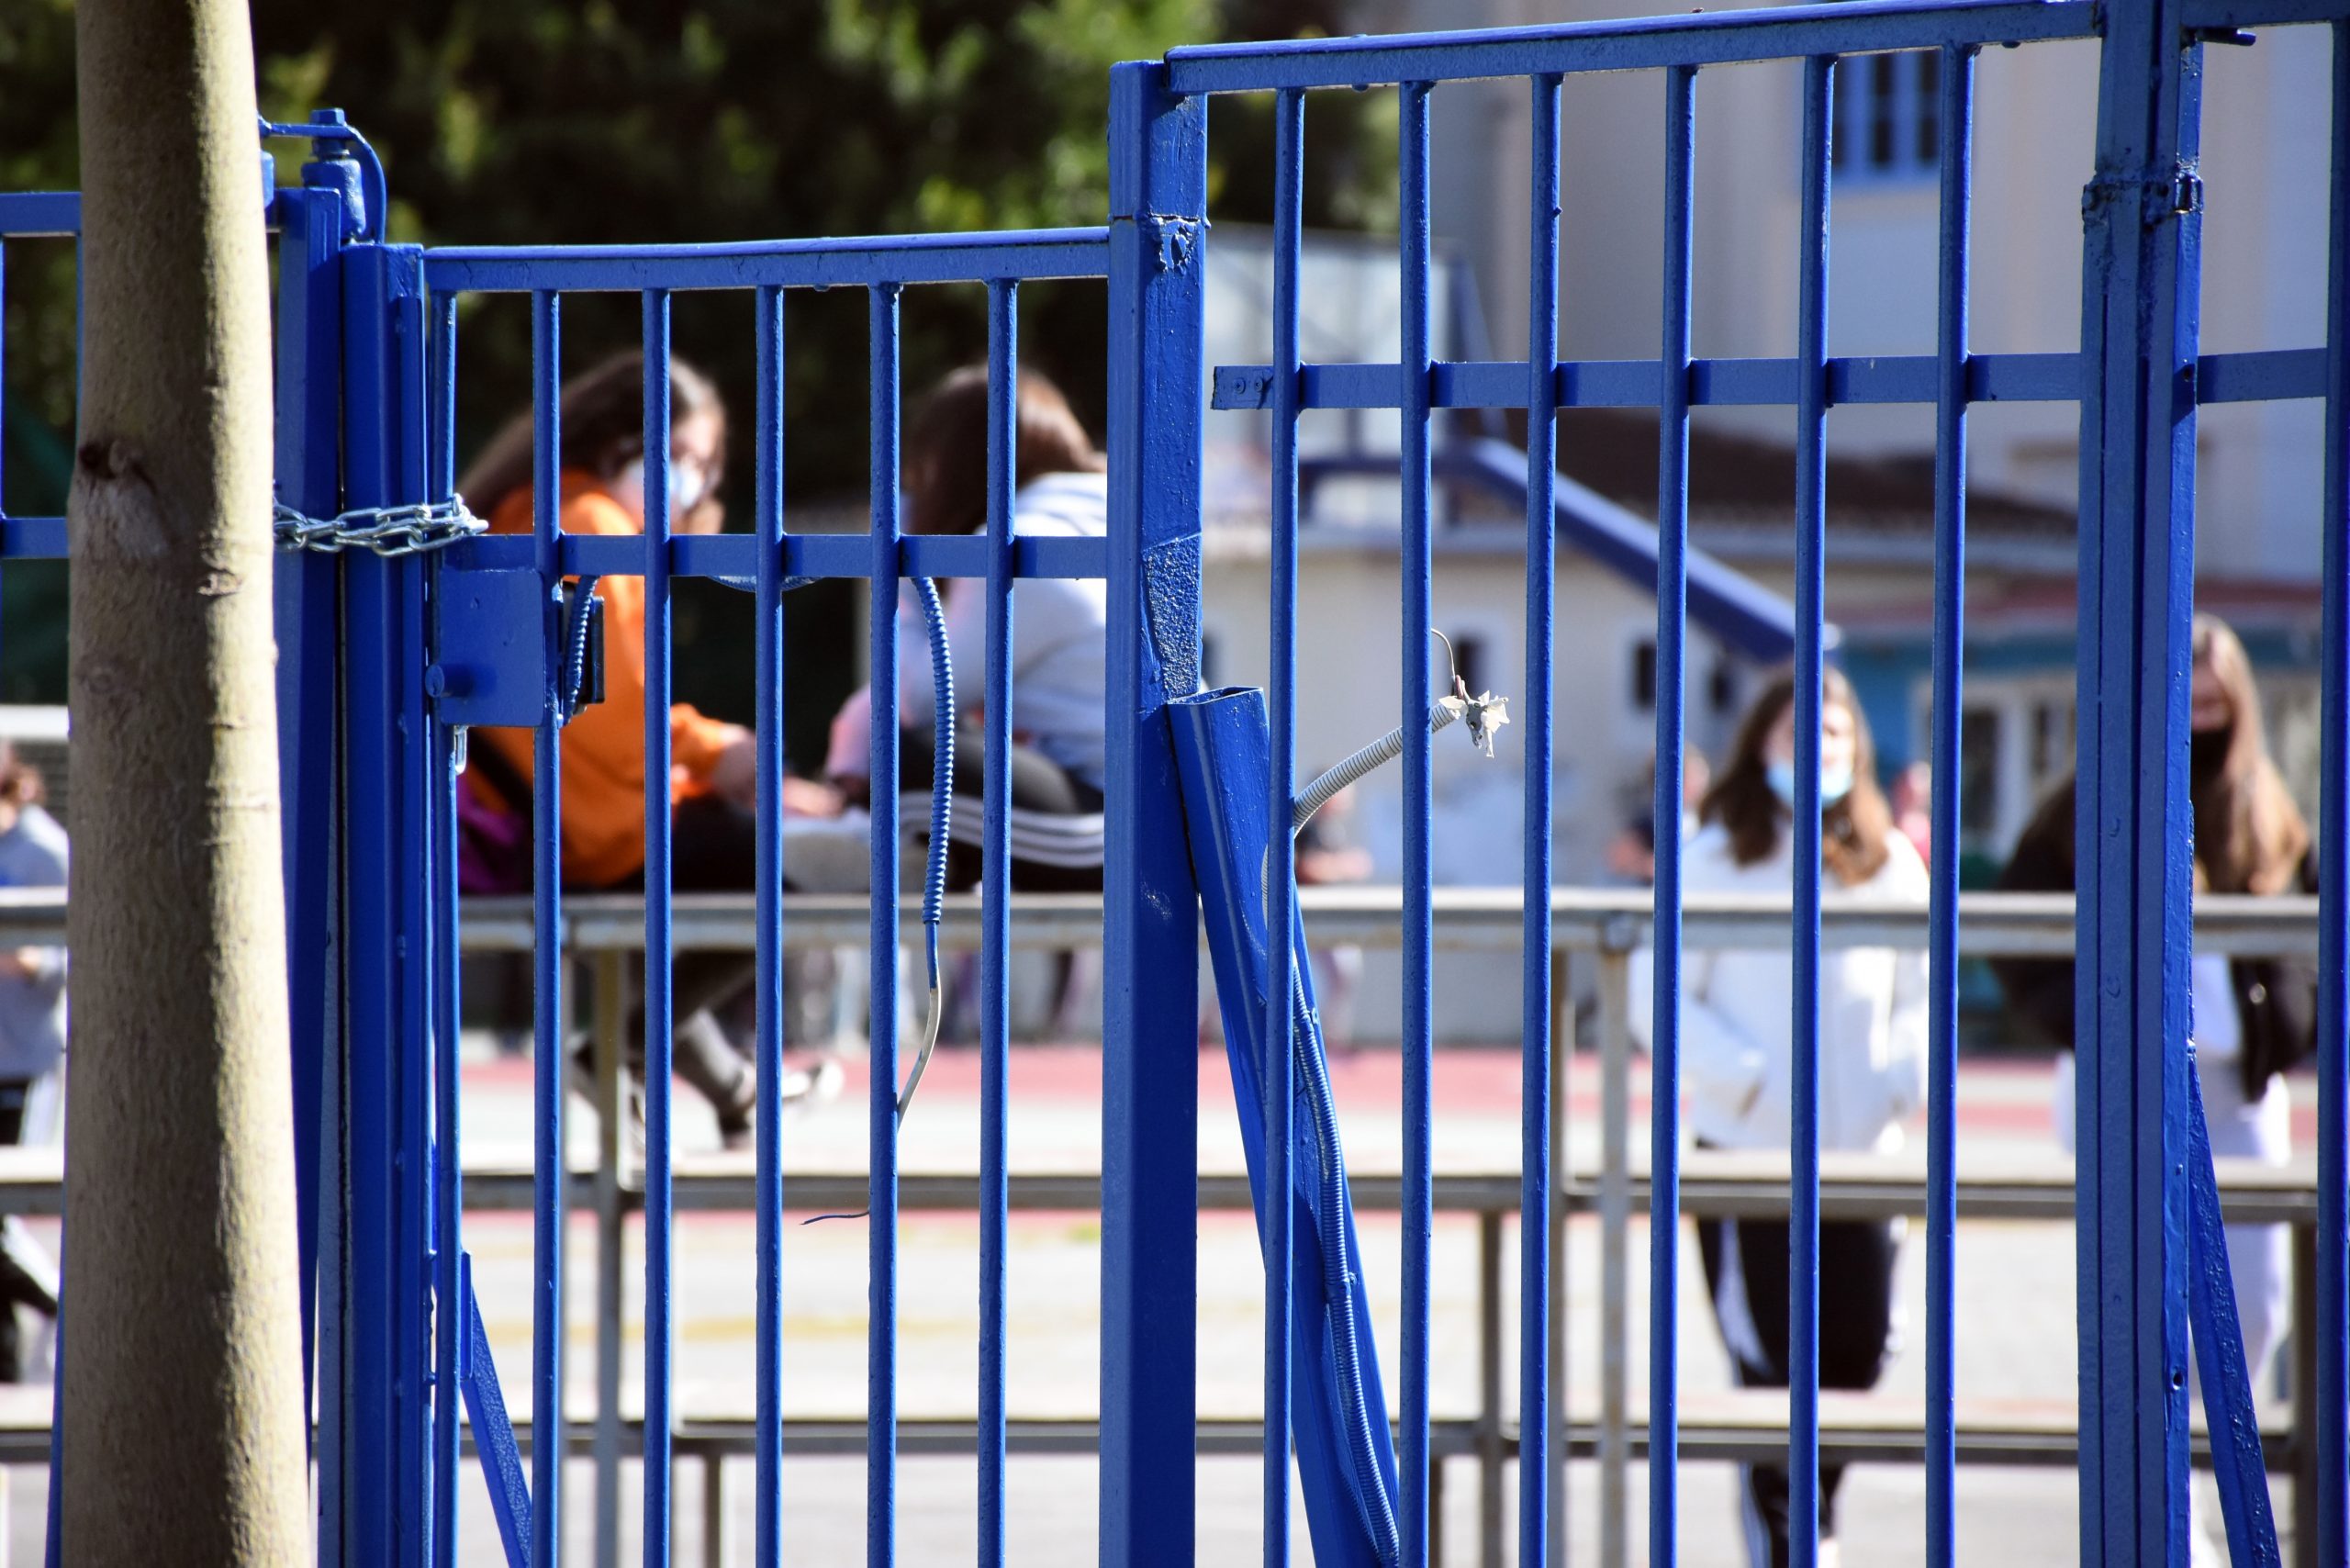 Ηράκλειο: «Μπλόκο» σε αρνητές γονείς μέσα στο σχολείο! Επεισόδιο και συλλήψεις